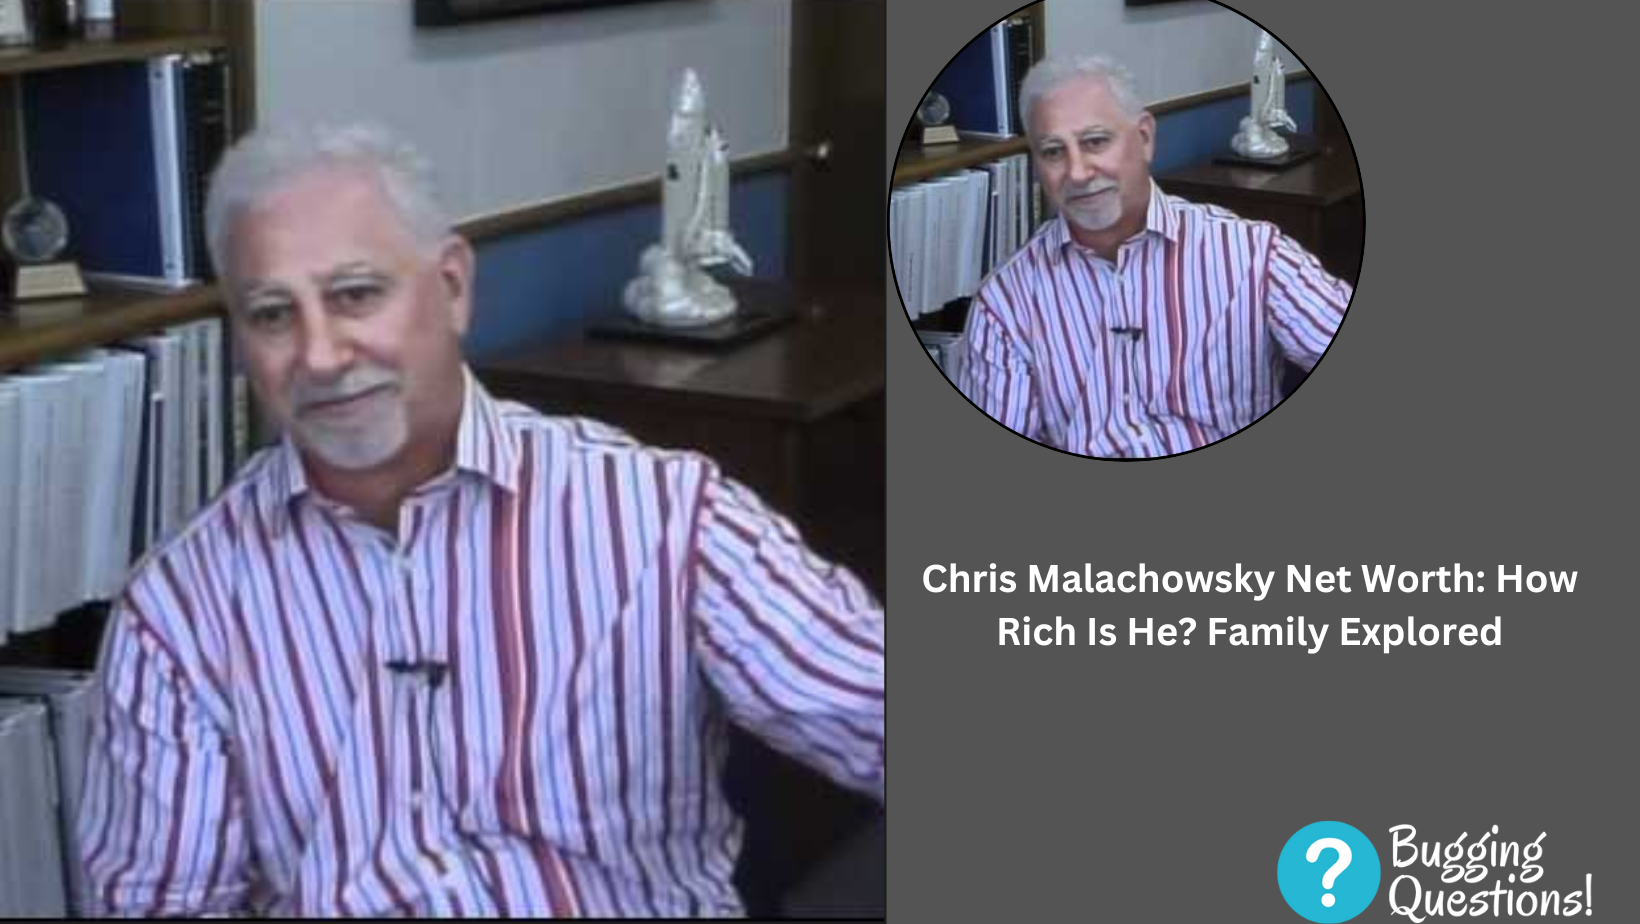 Chris Malachowsky Net Worth